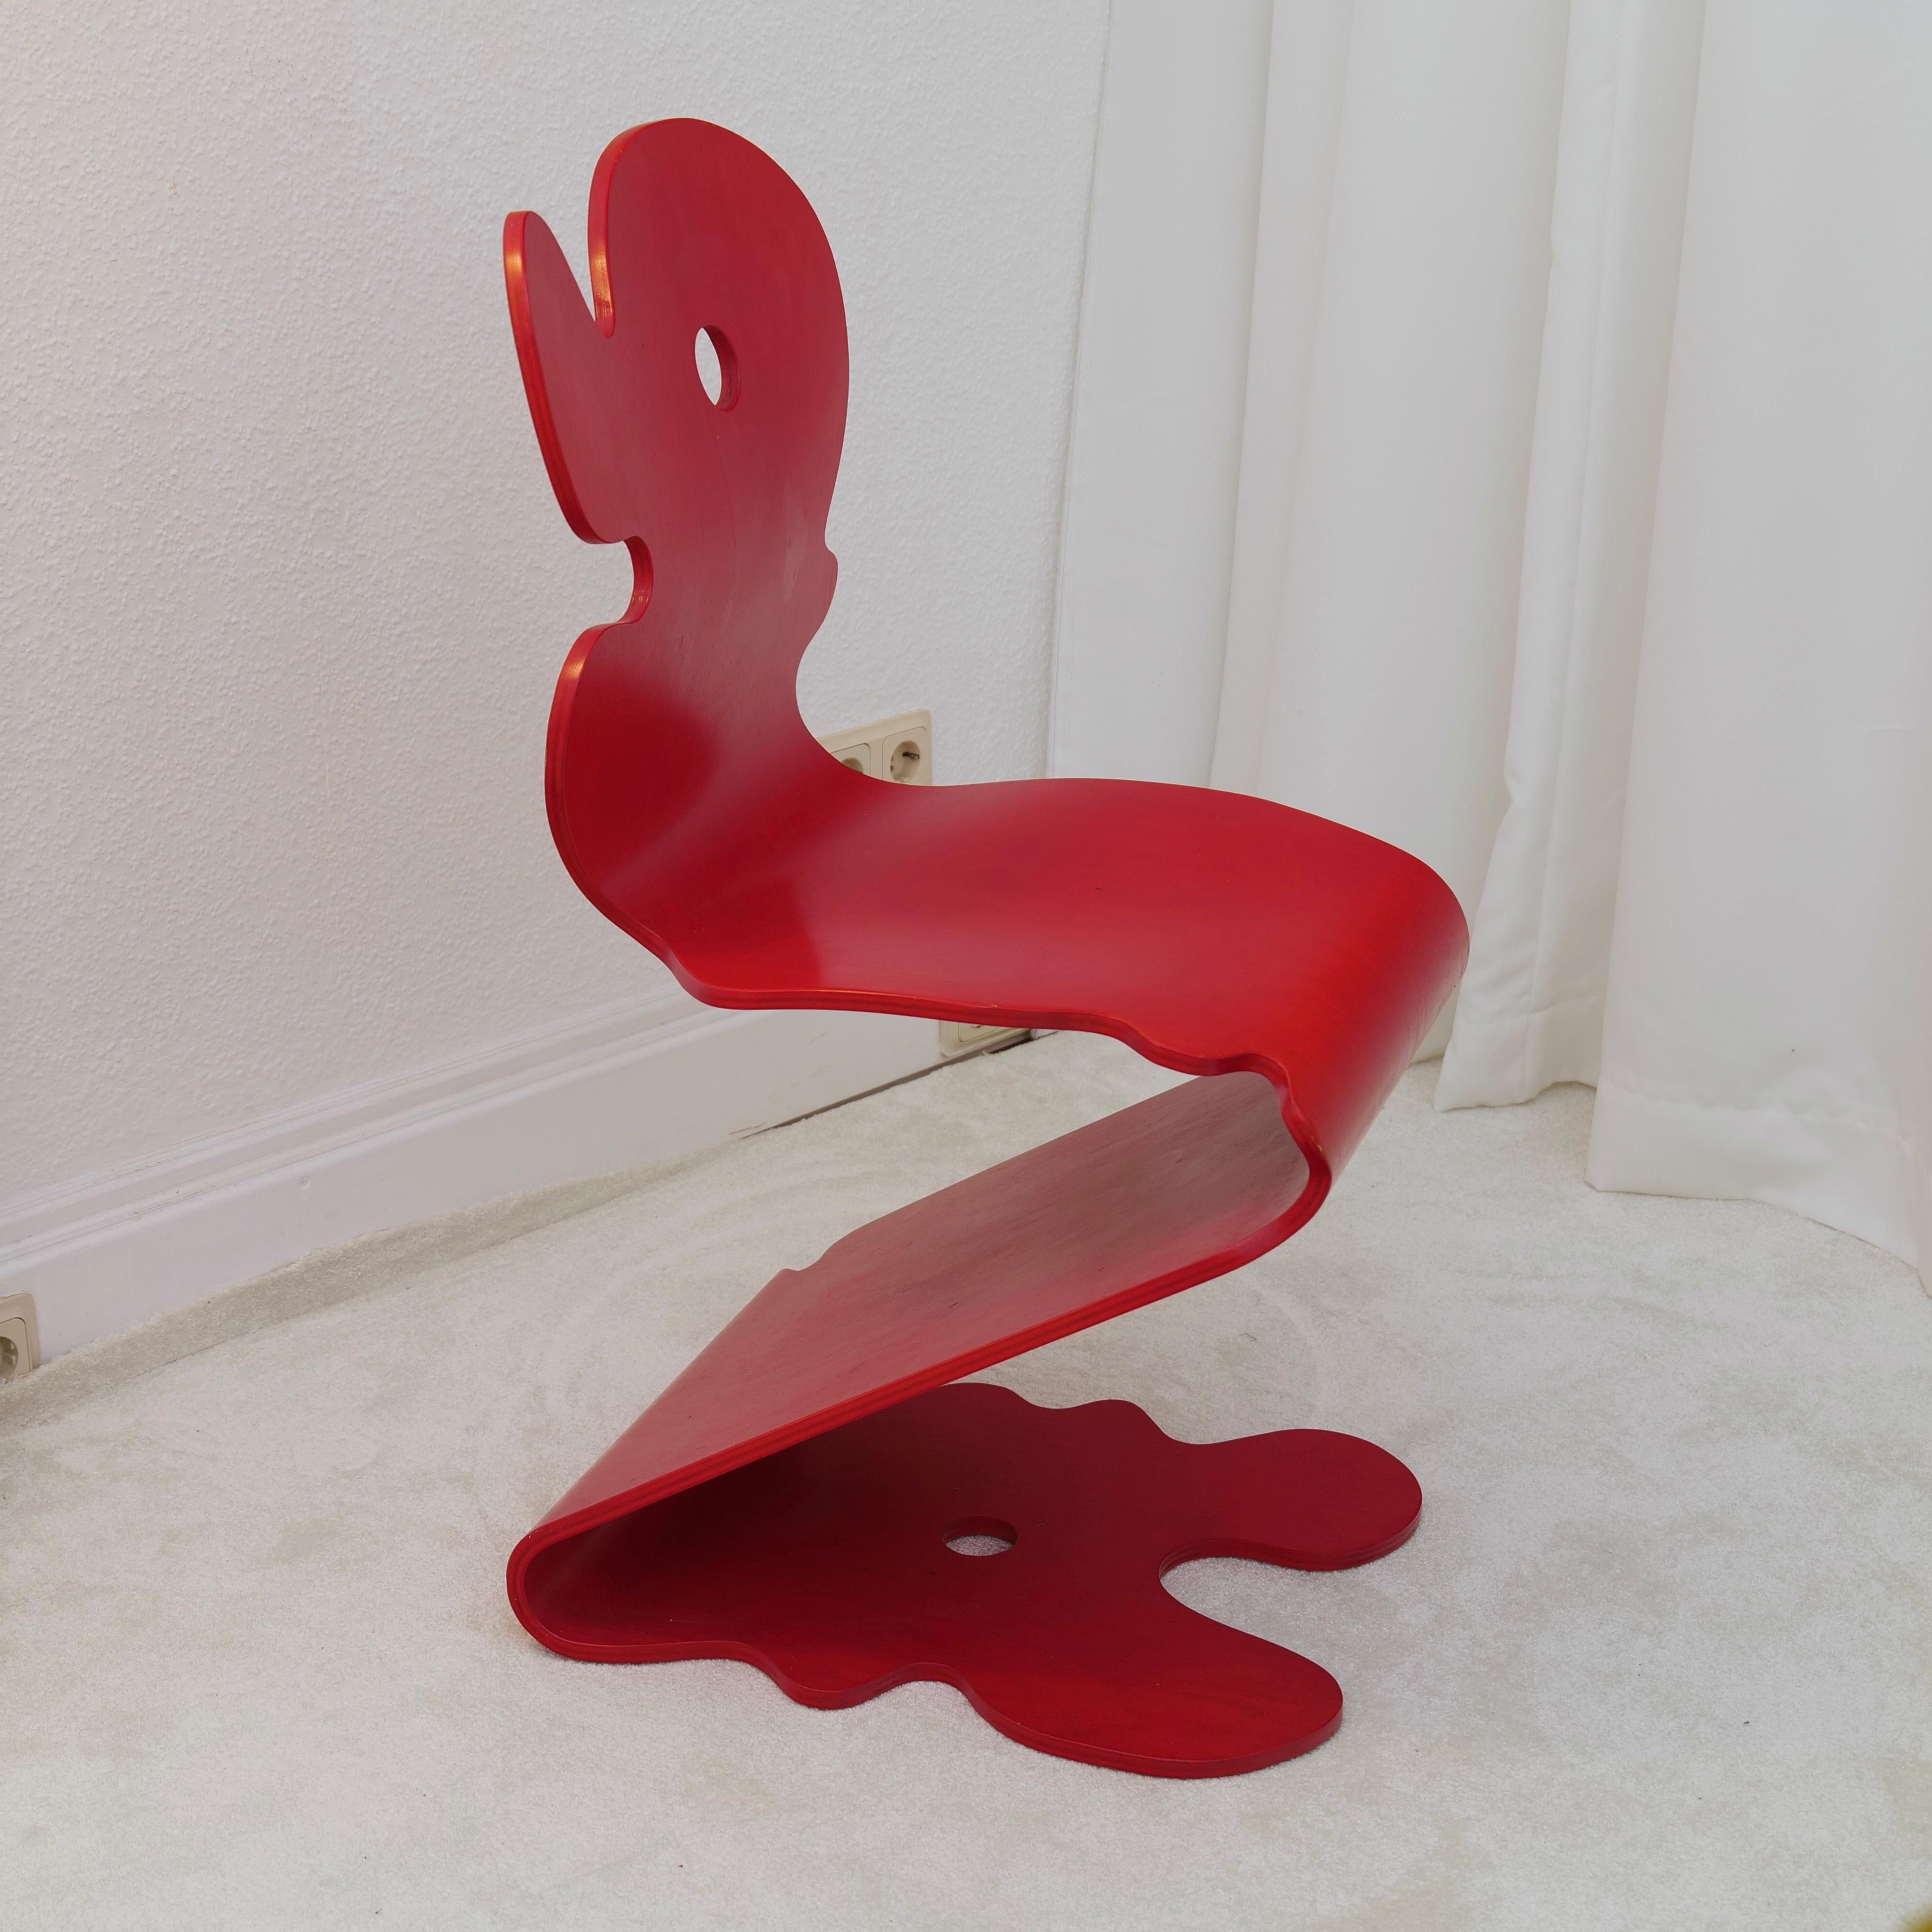 seltener roter 5020 Pantonic Chair in sehr gutem Zustand mit leichten Gebrauchsspuren

leuchtend rote Farbe - perfektes Sammlerstück und stapelbar mit anderen Stühlen.